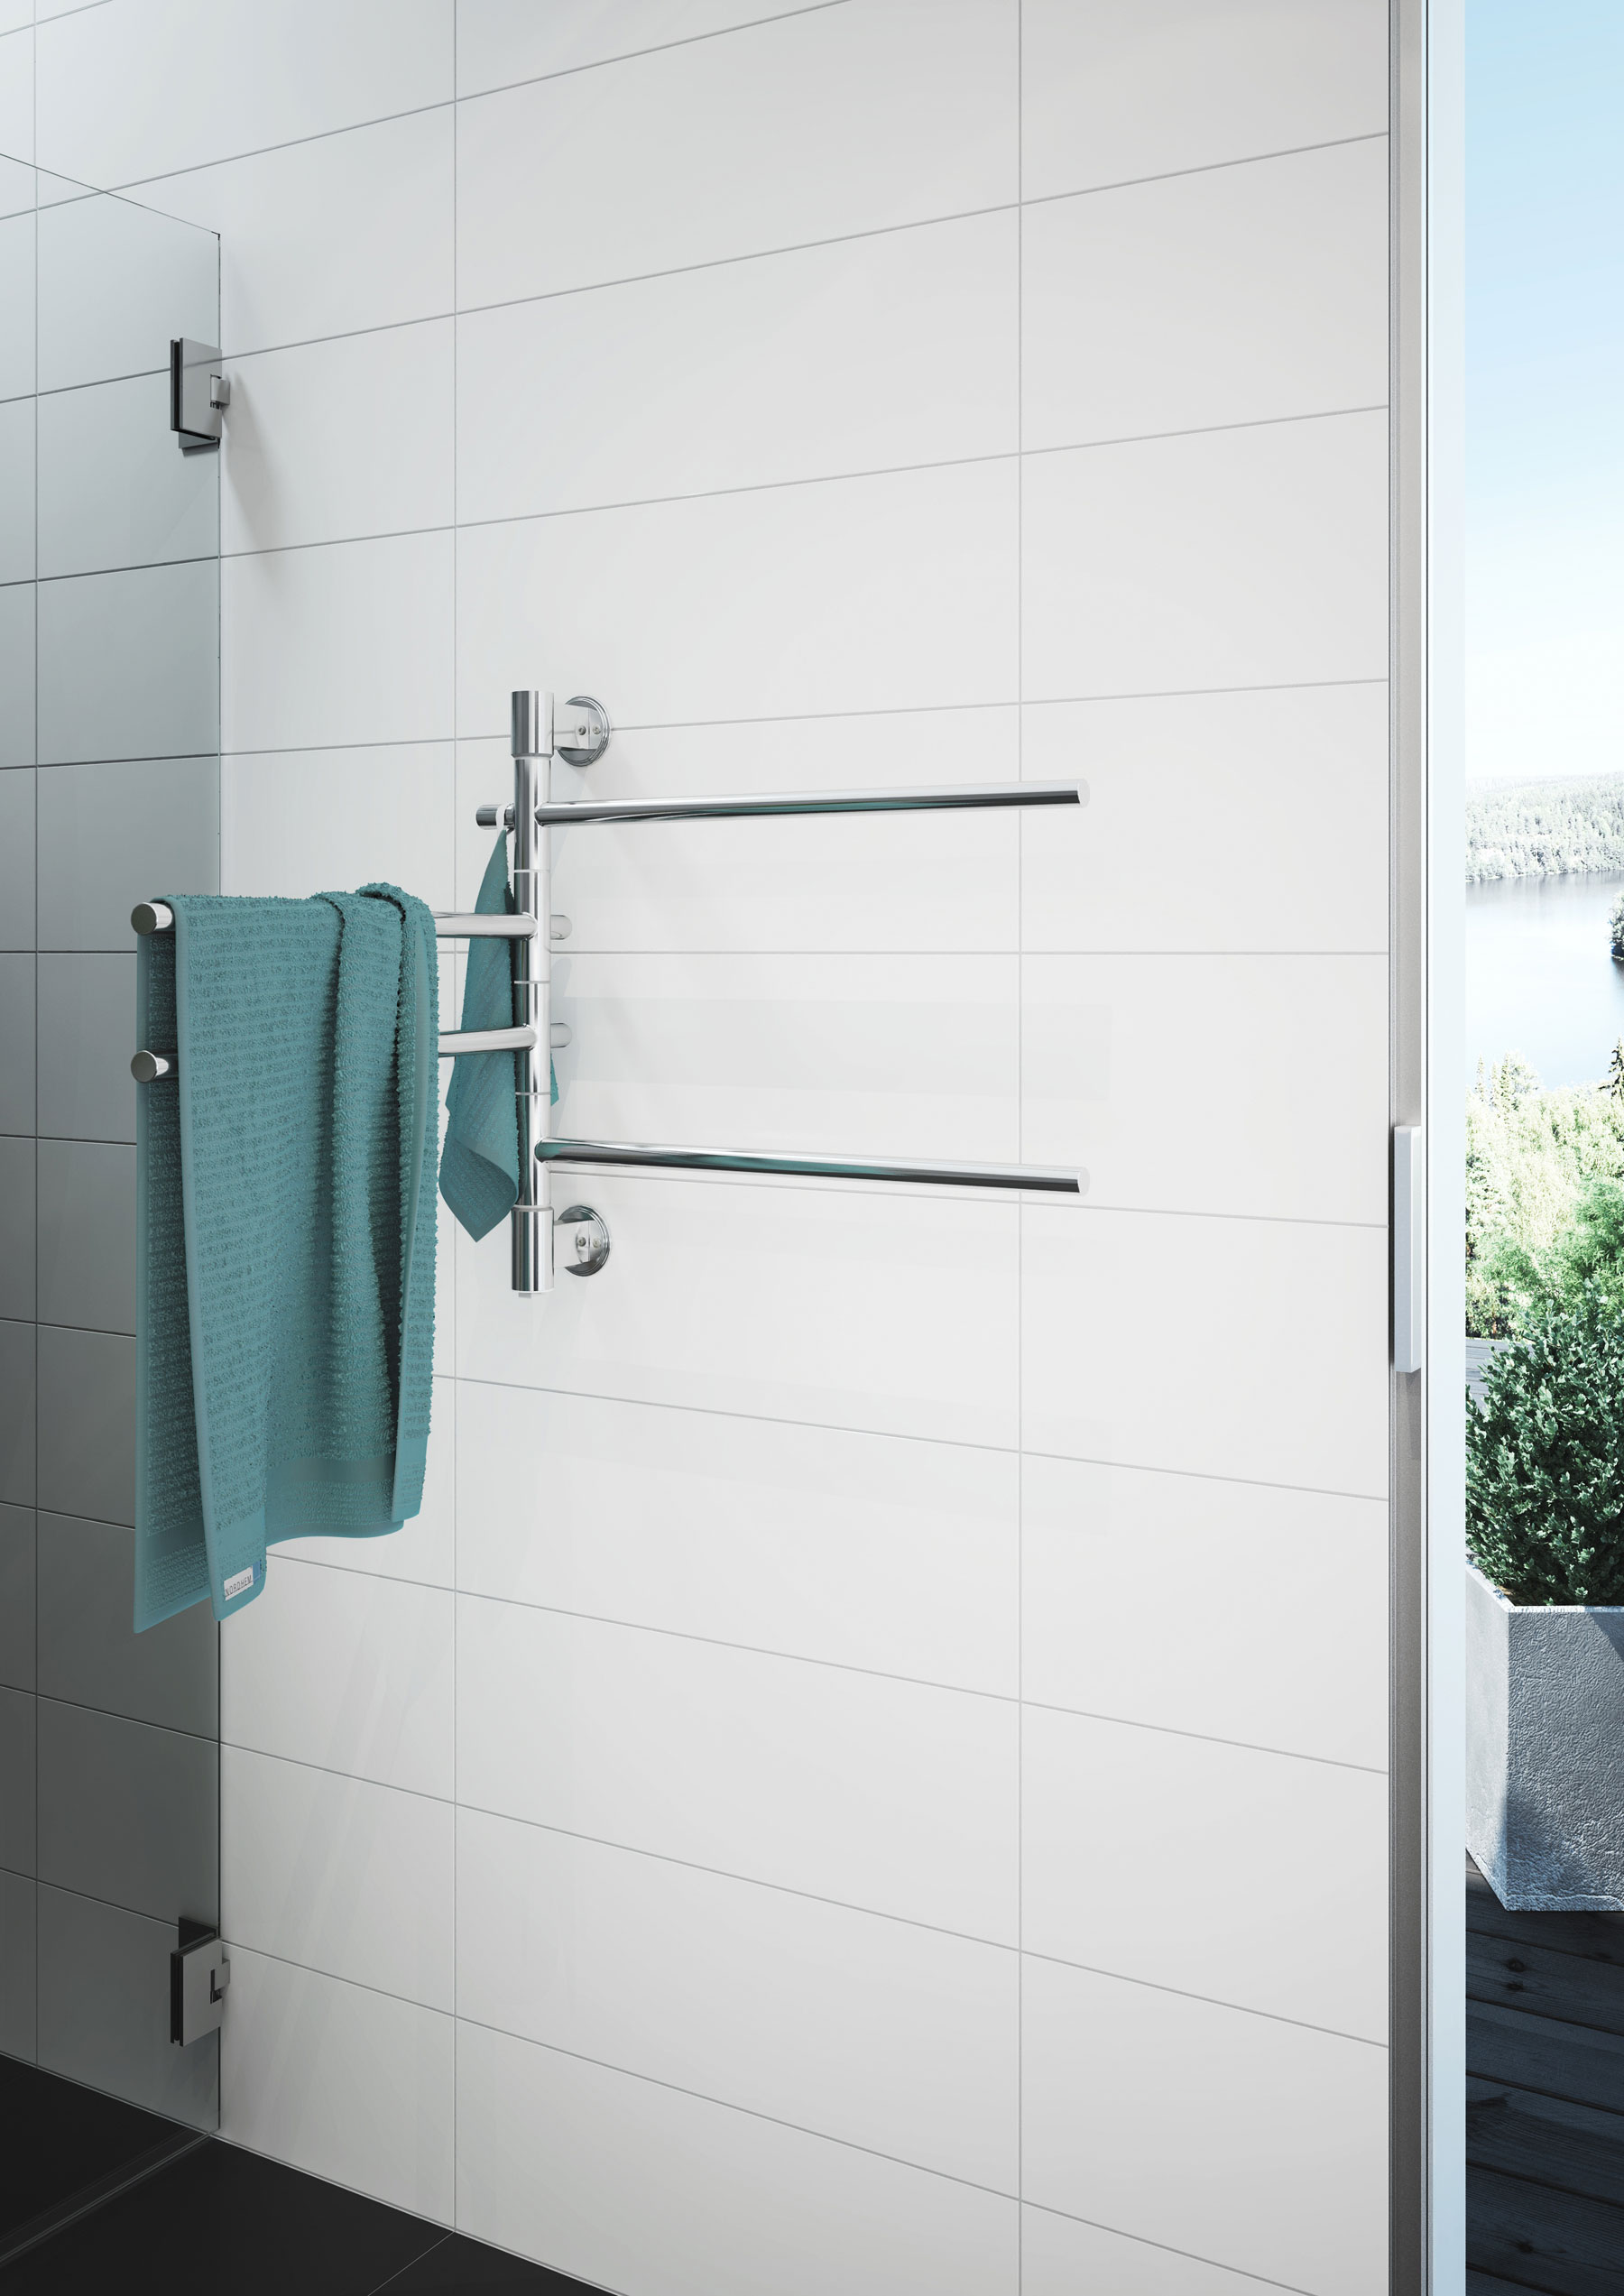 Pro osobitost a jedinečnost vaši koupelny nabízíme eleganci, nápaditý design a nejvyšší kvalitu.  - foto - Fenix